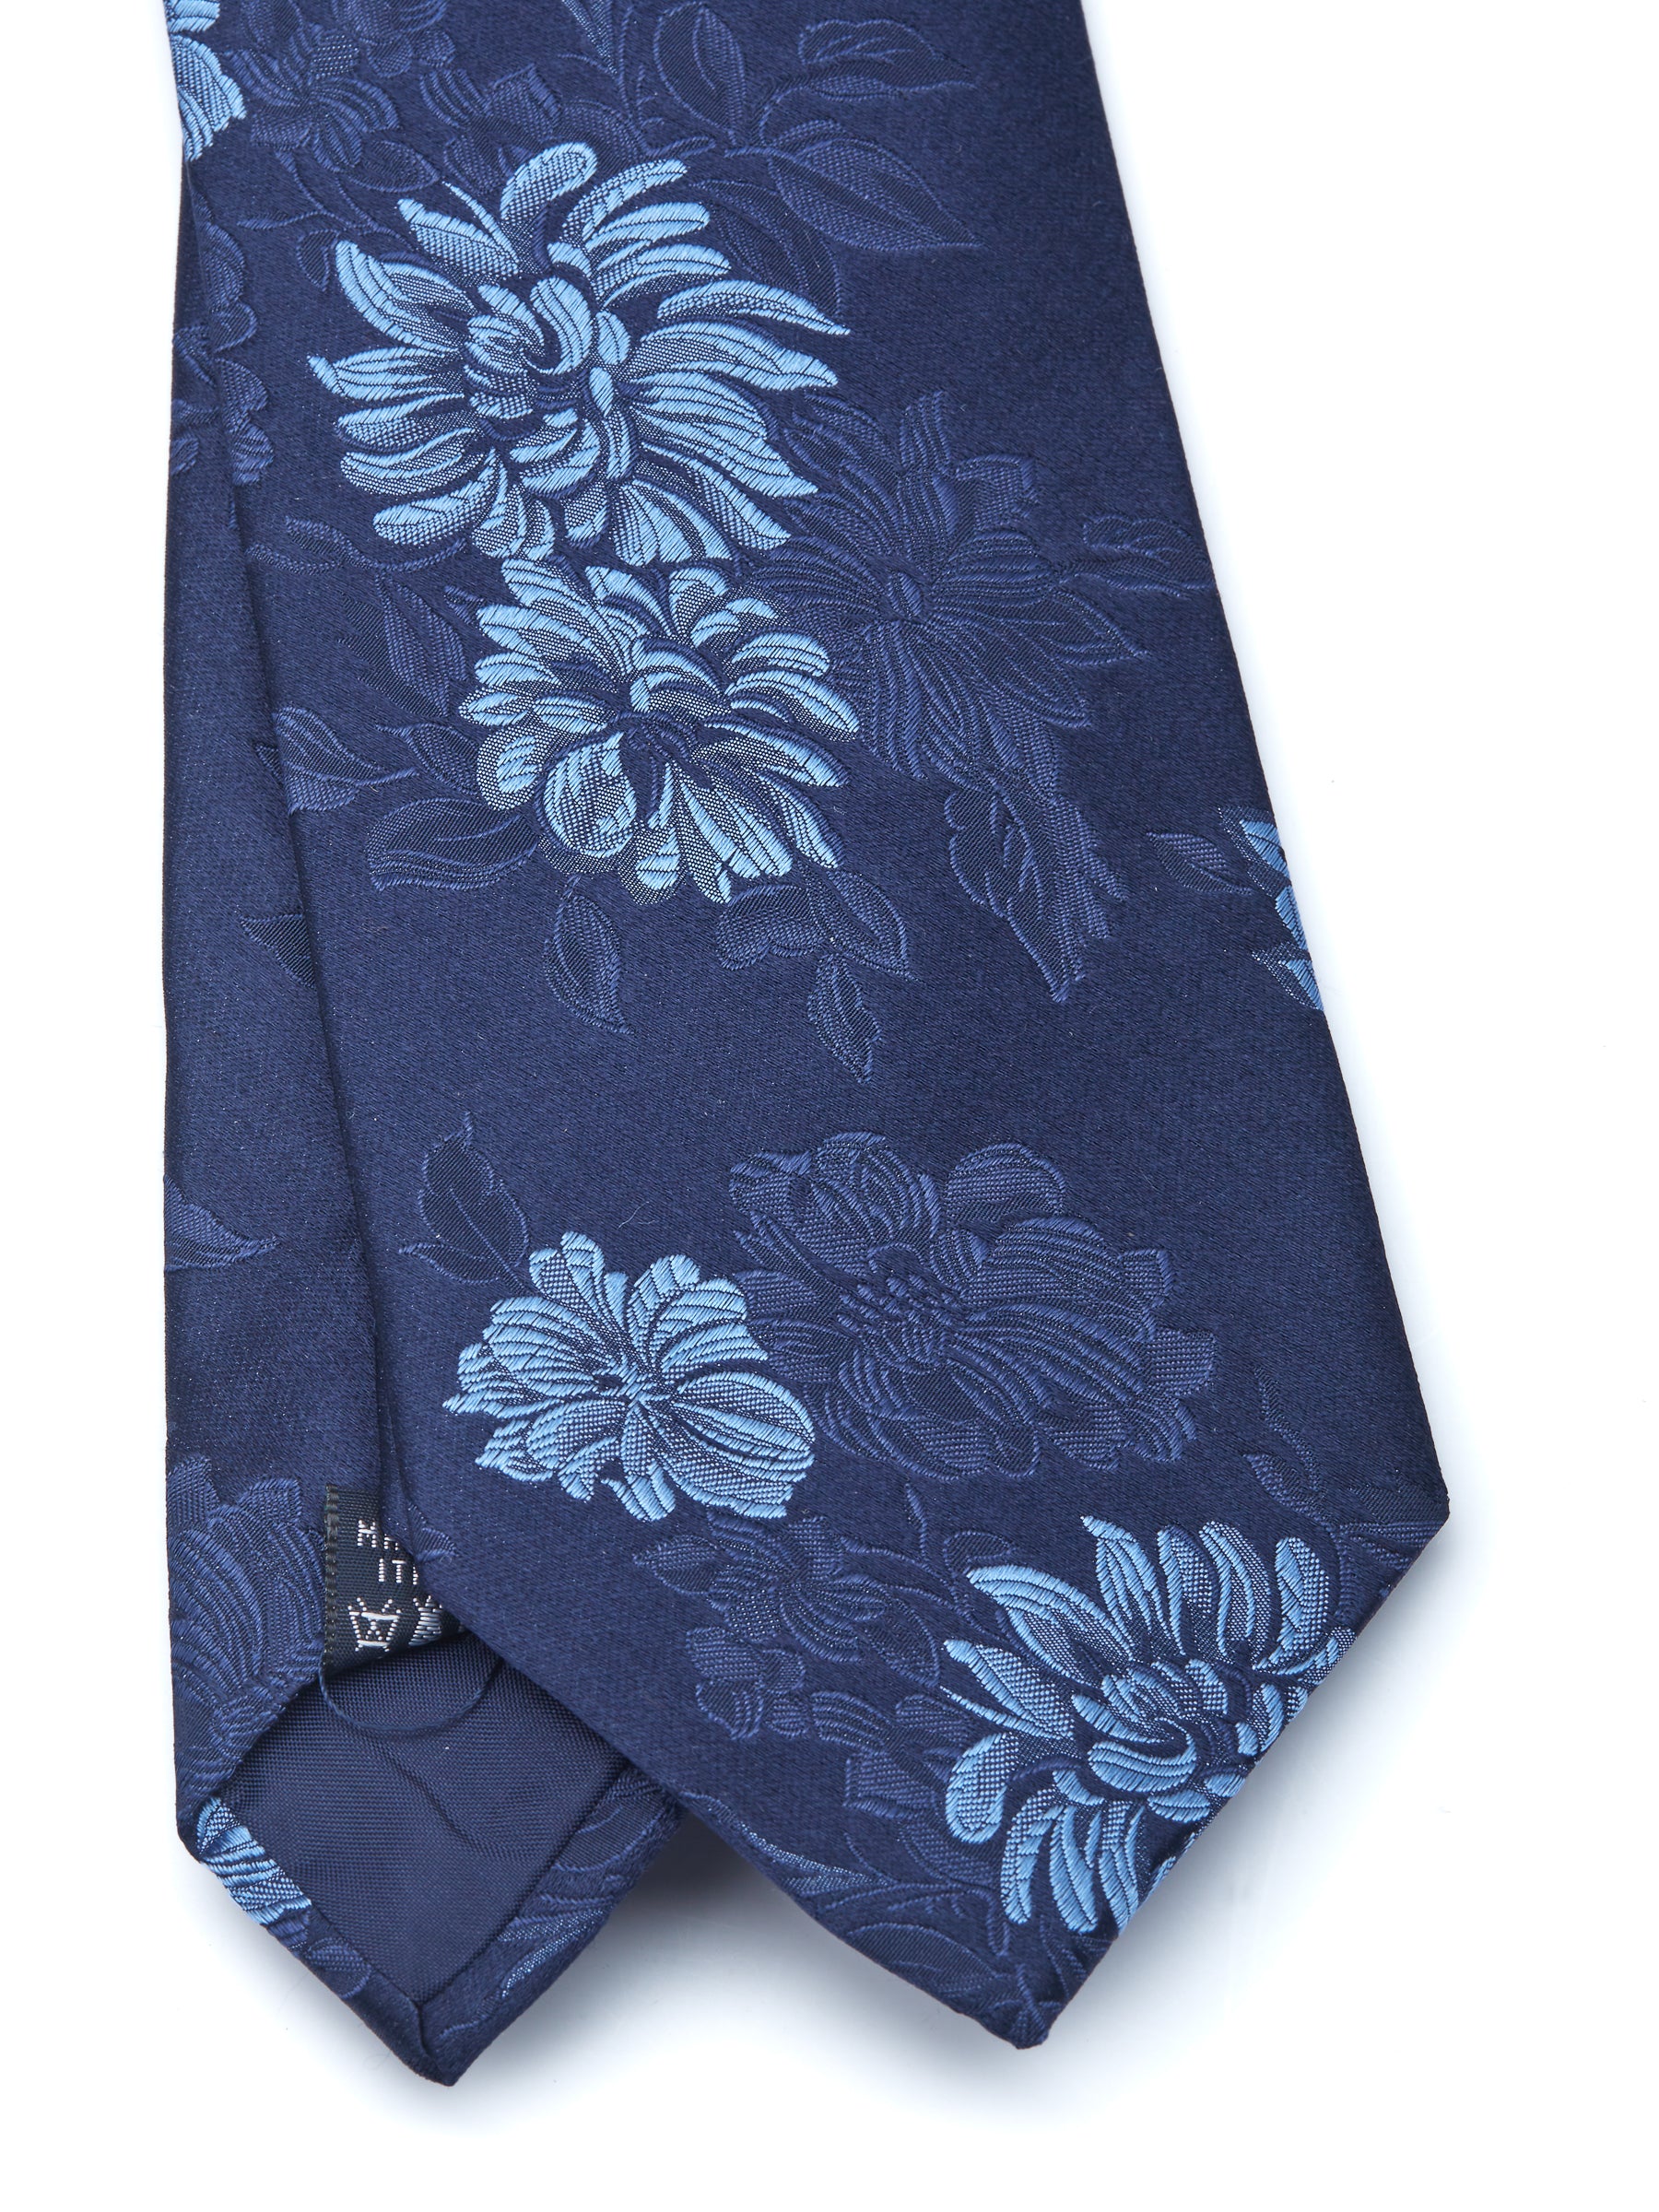 Blue Bourgainville Silk Tie